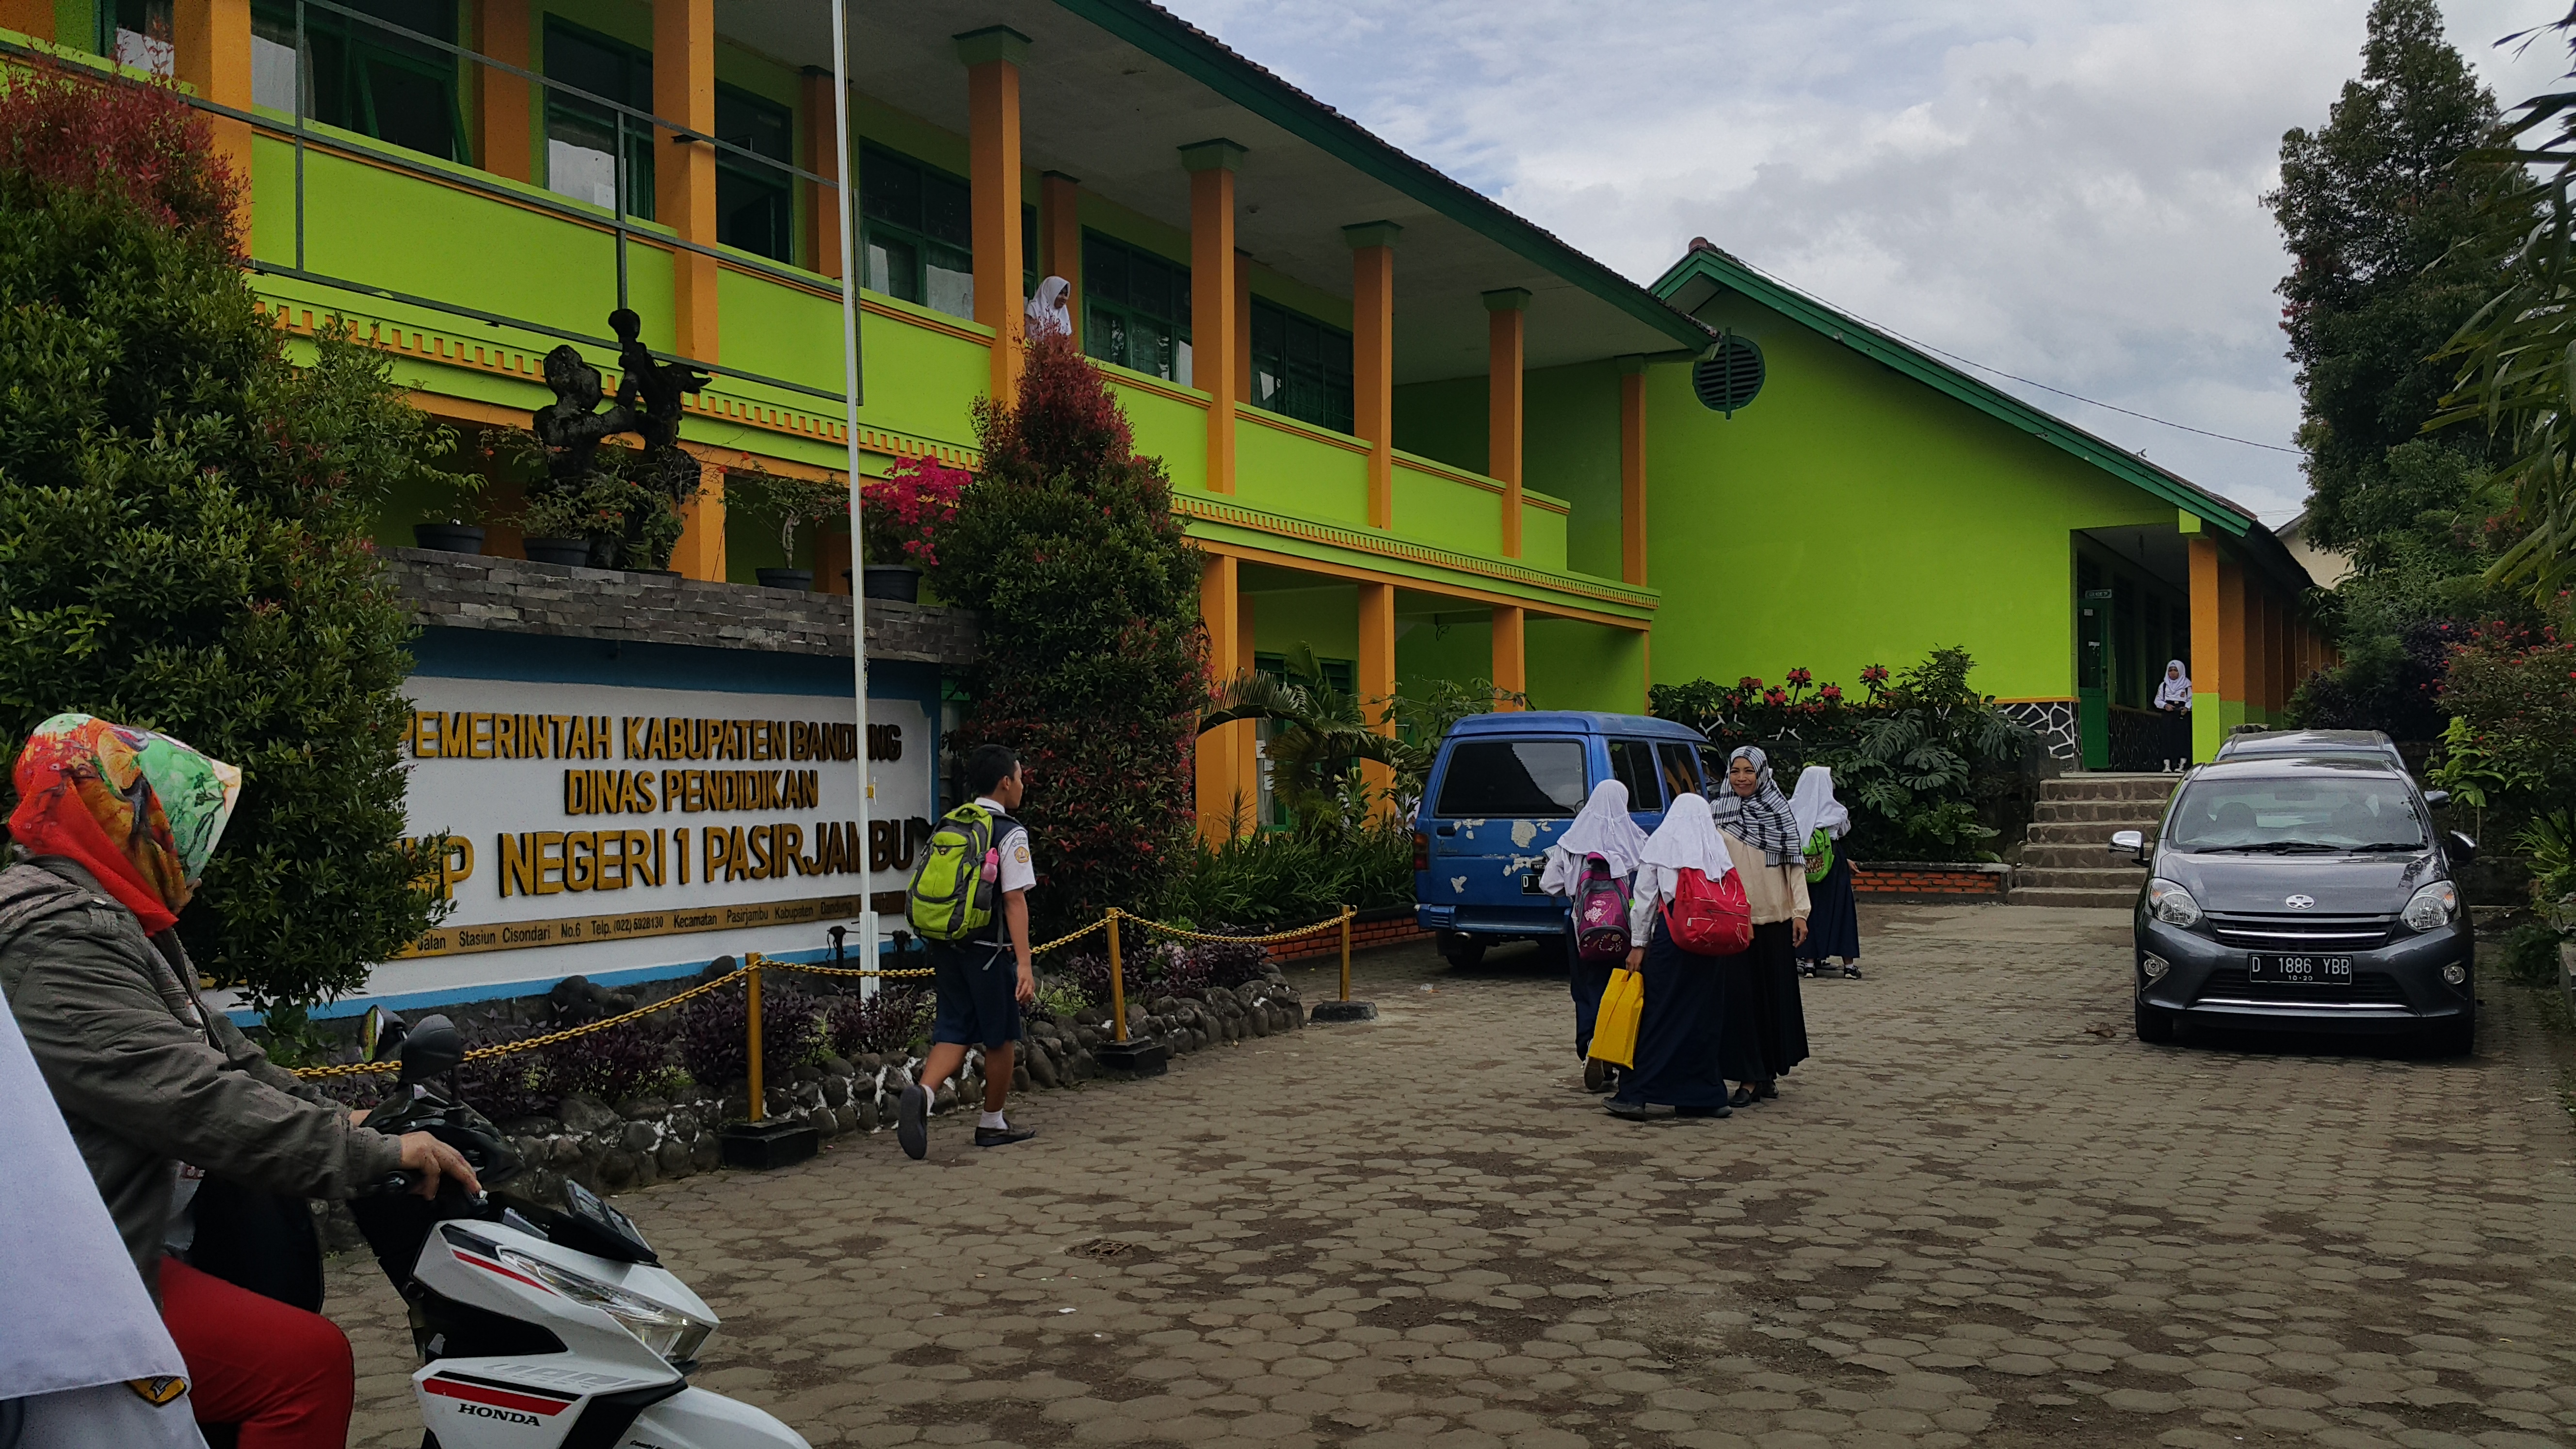 Gedung SMP Negri 1 Pasirkambu desa Pasirjambu Kec. Pasirjambu Kab. Bandung , siap ikut UNBK.